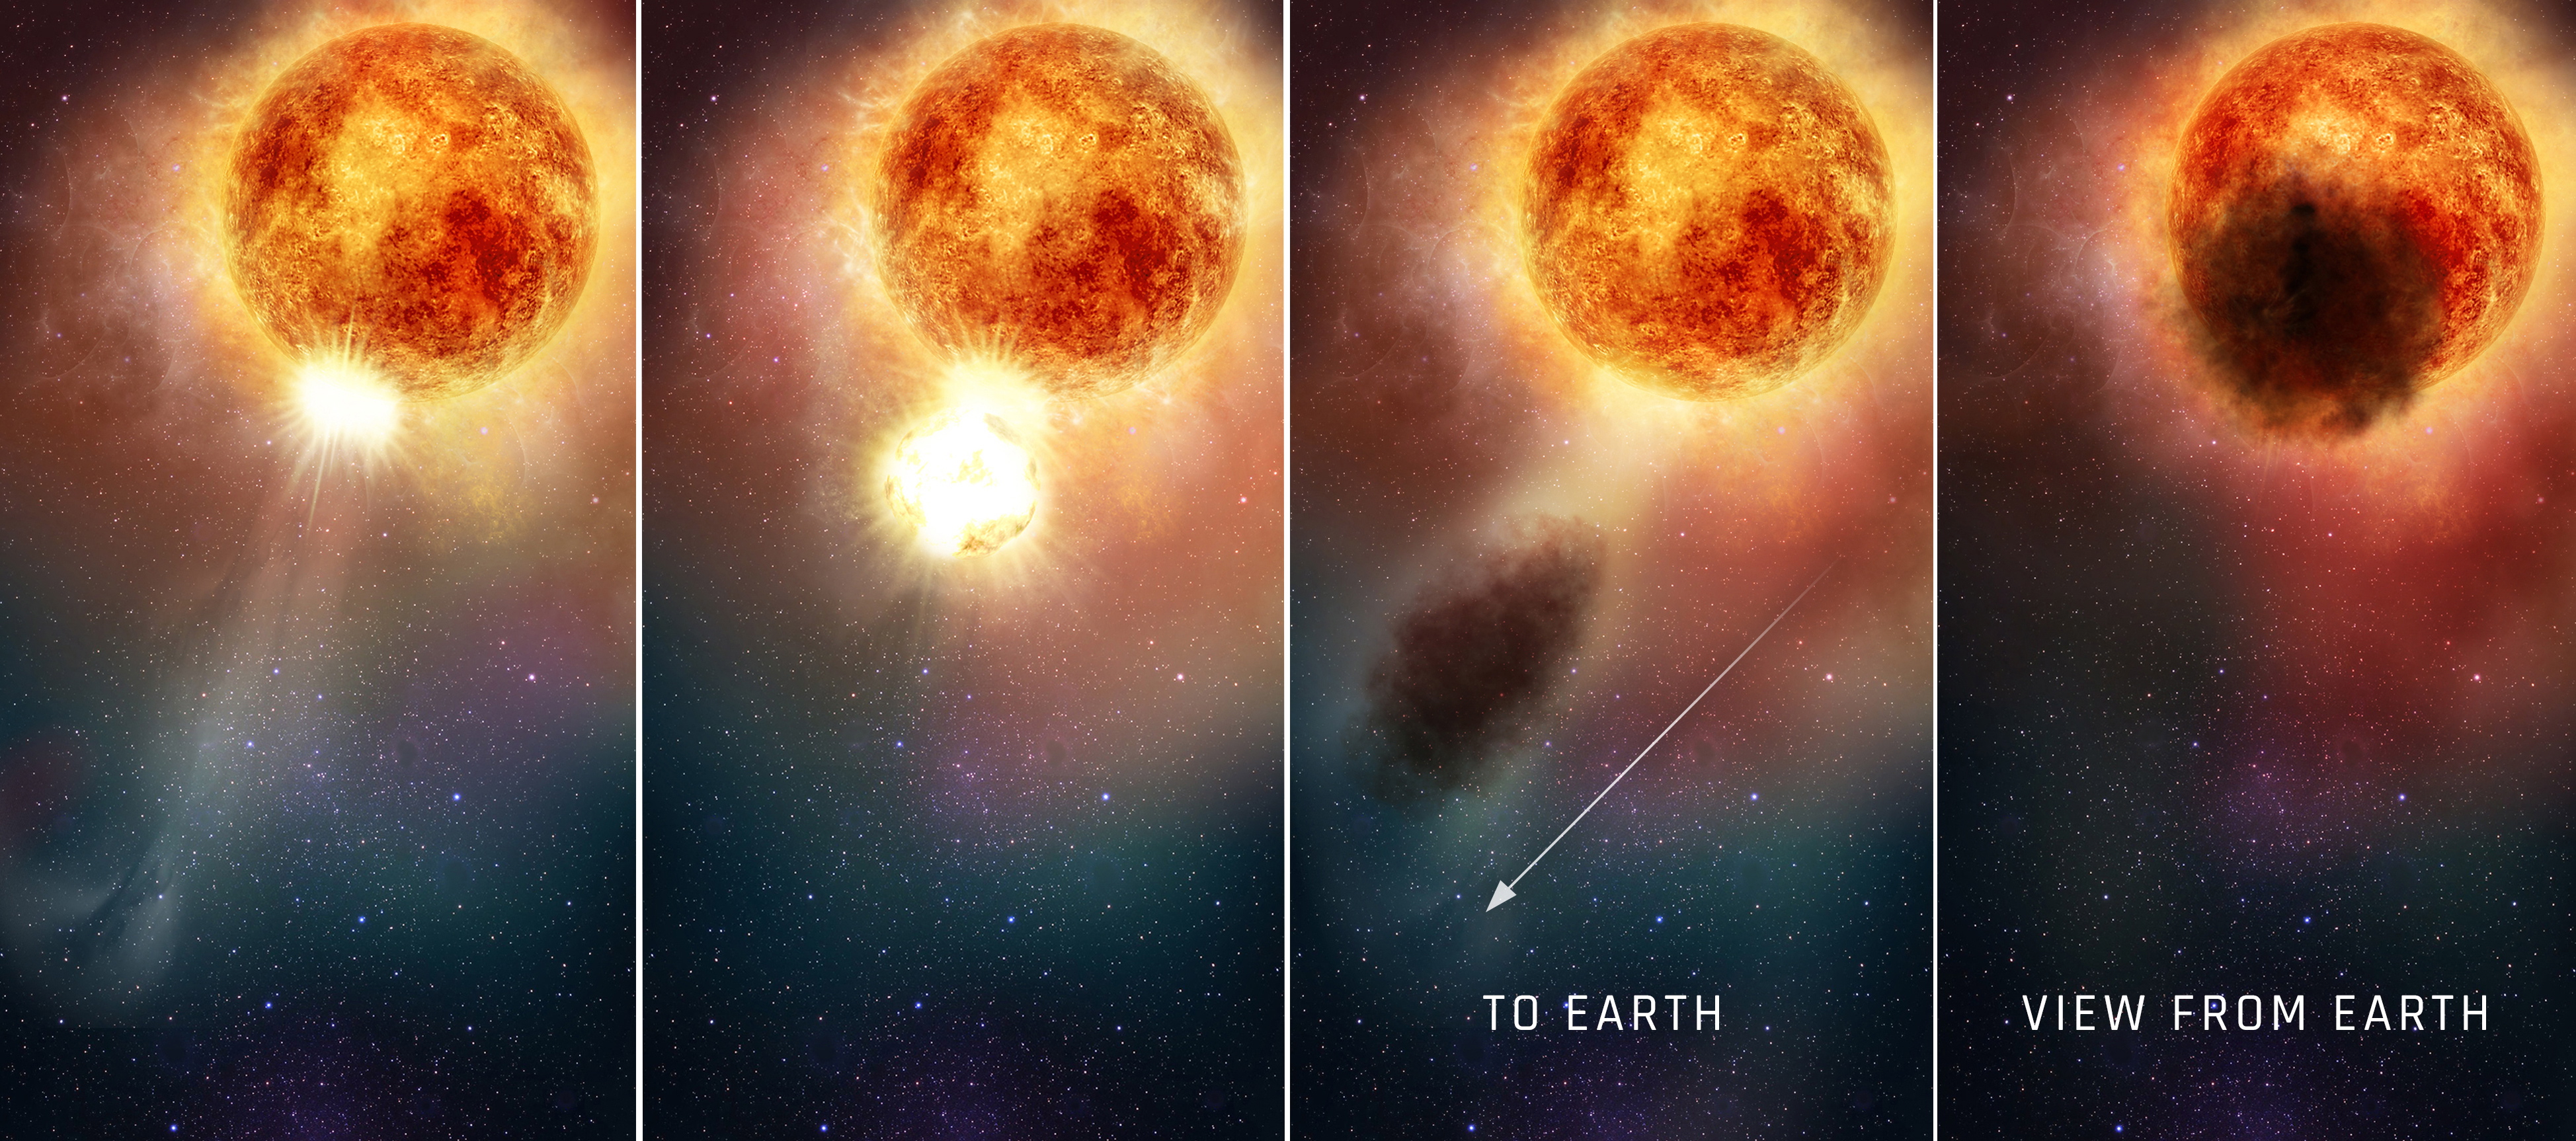 Se vio a Betelgeuse emitiendo material oscuro en 2019, lo que provocó una breve atenuación